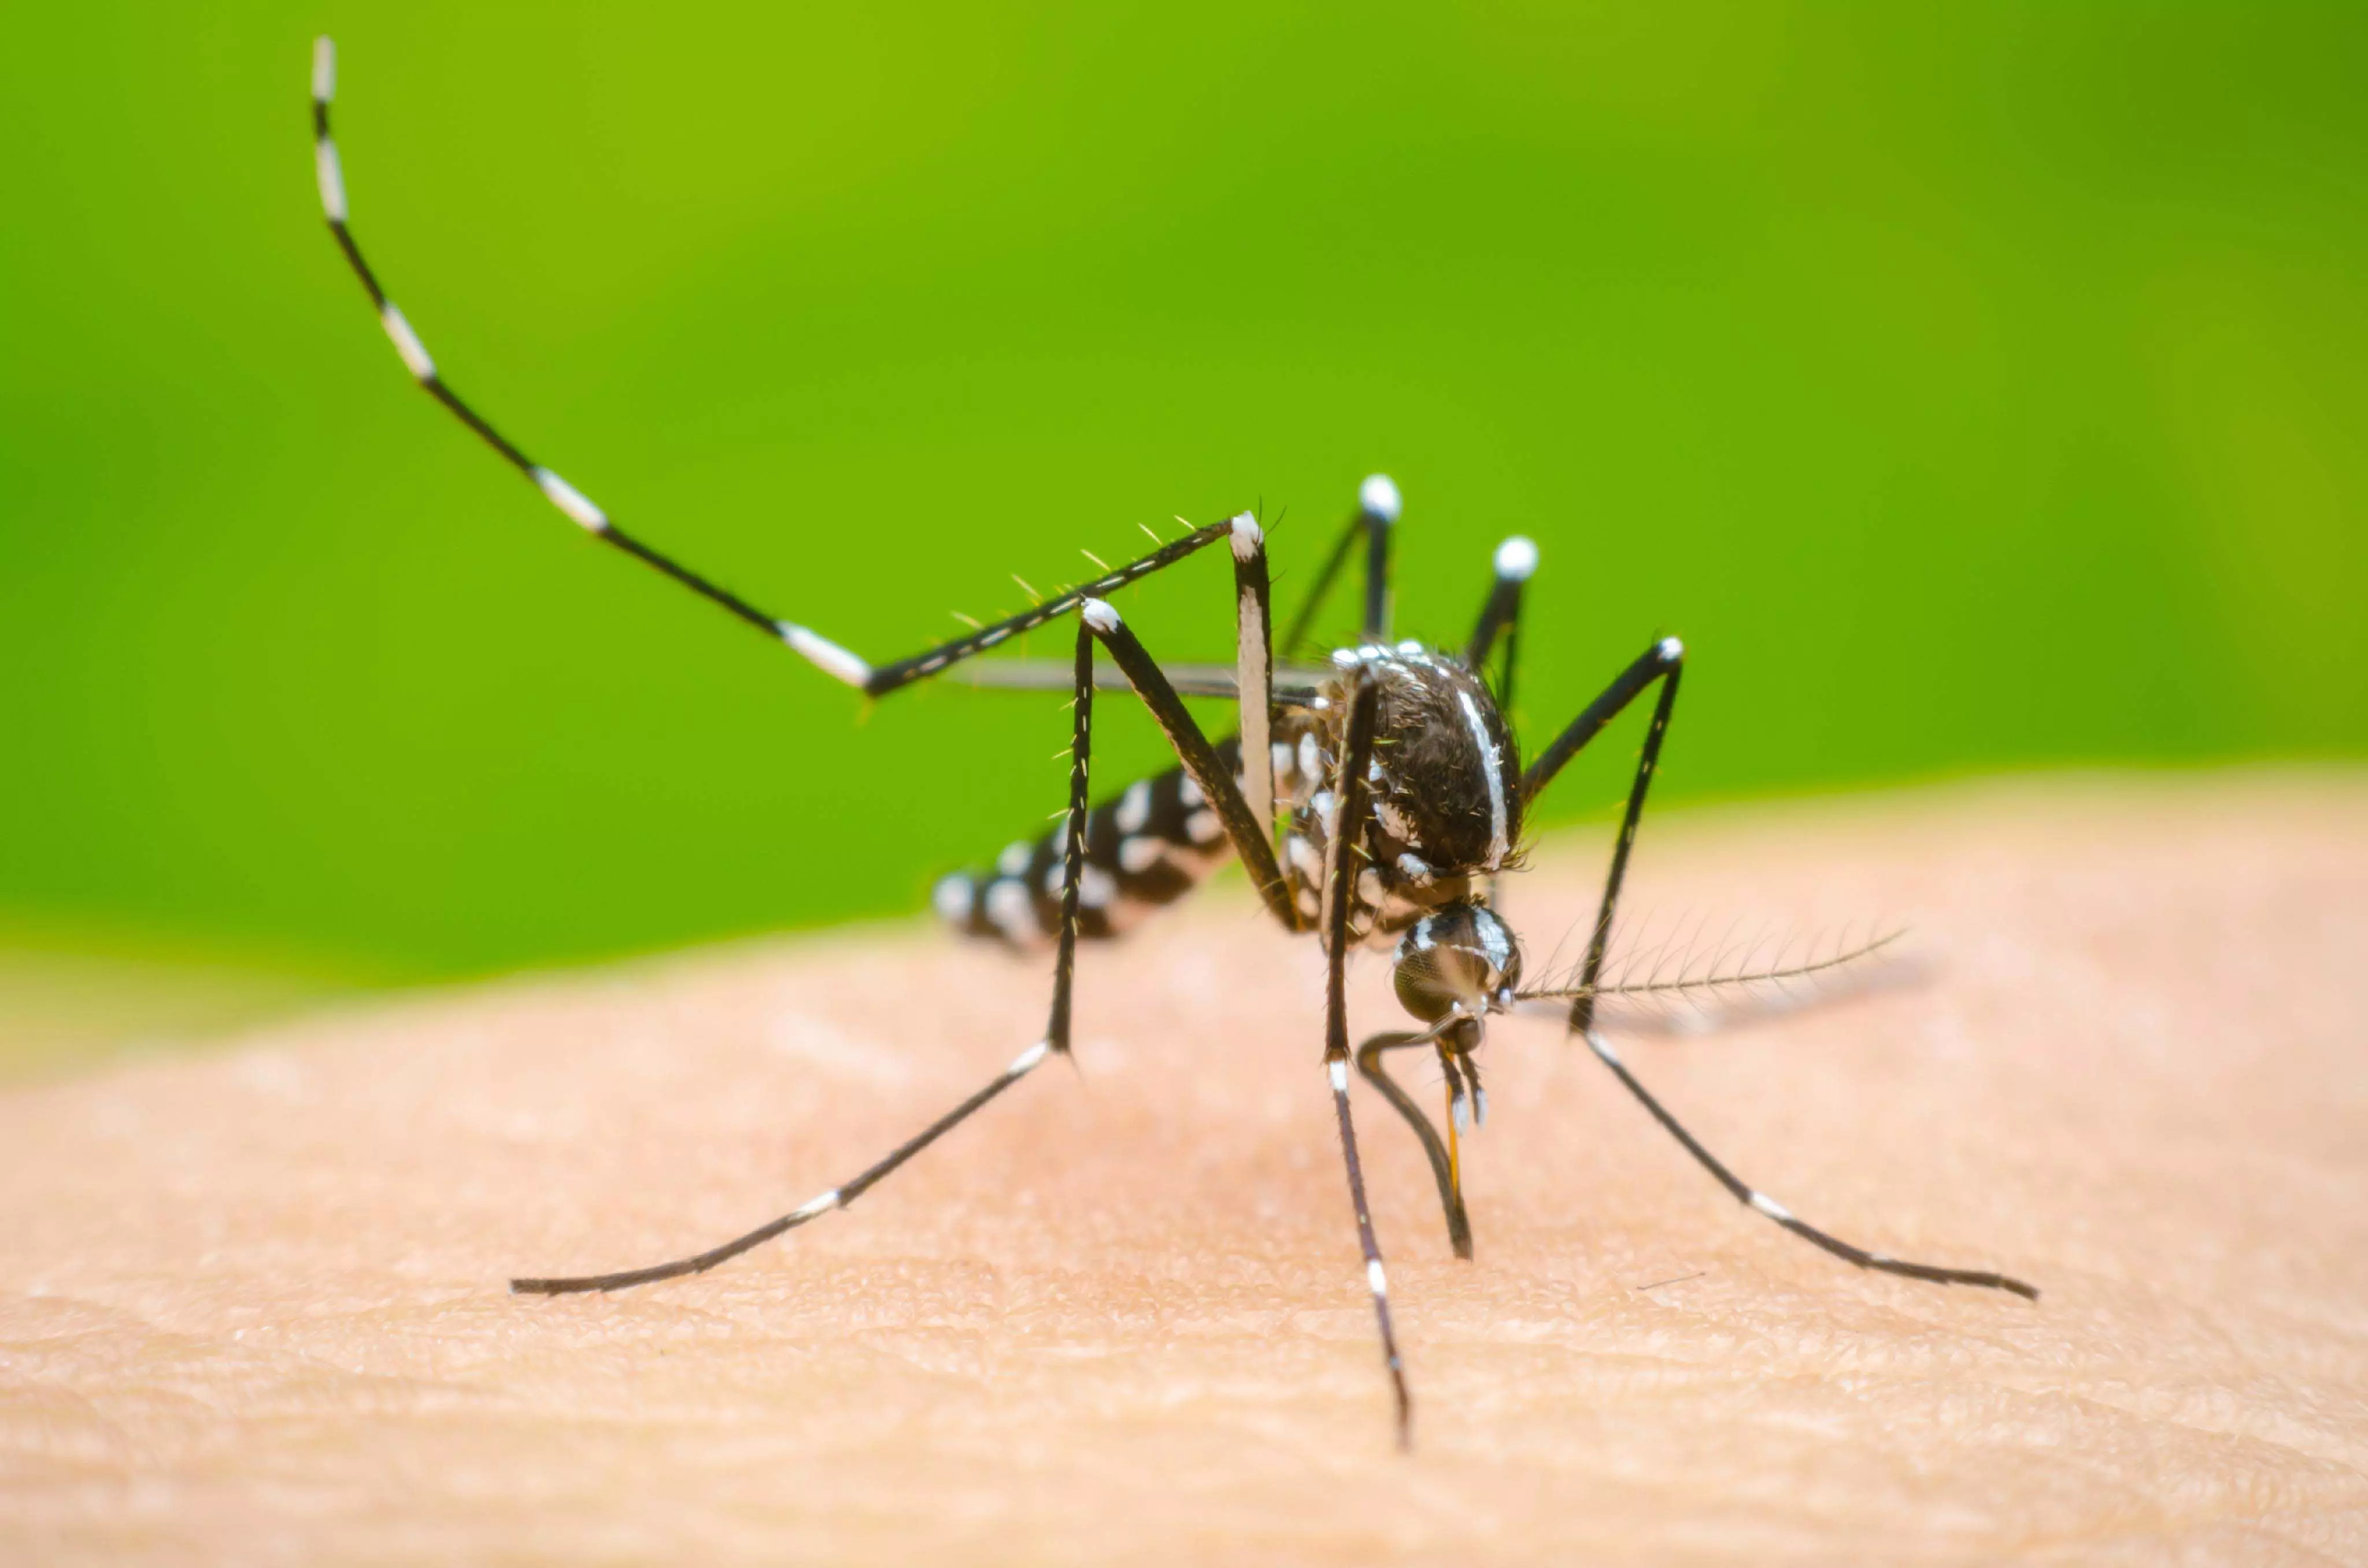 dengue के लक्षणों को नजरअंदाज करना मौत का कारण बन सकता